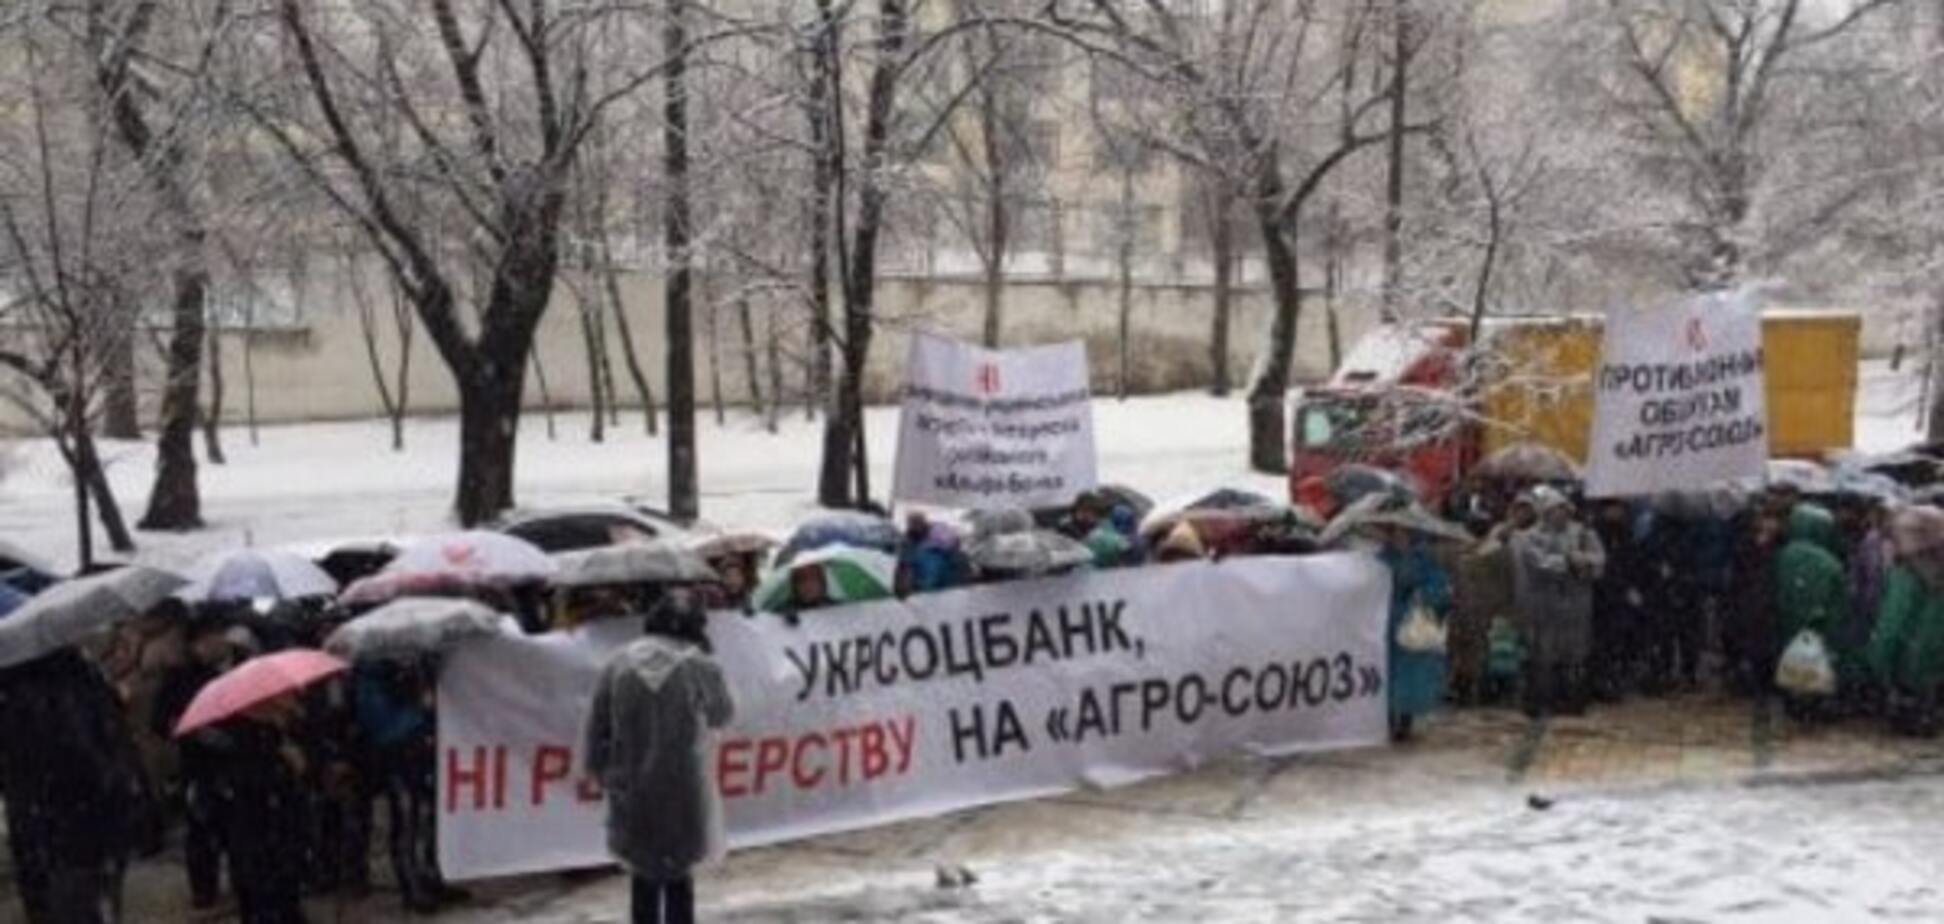 Аграрии вышли под стены Укрсоцбанка на защиту 'Агро-Союза'